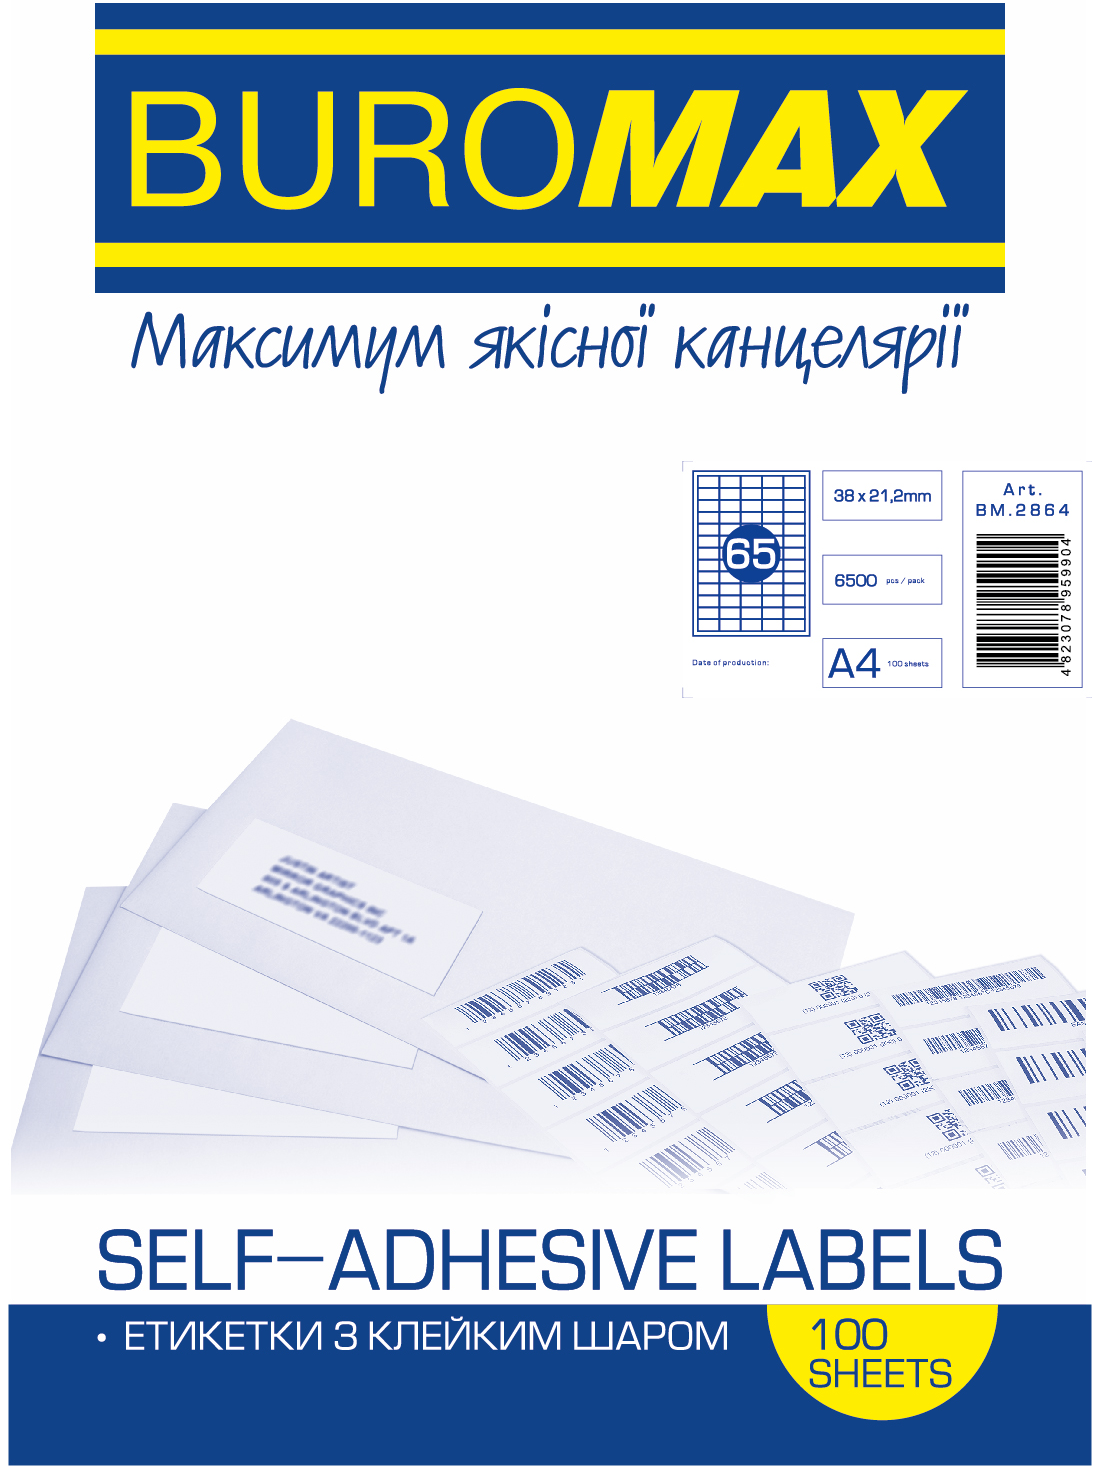 Етикетка самоклеюча Buromax 65 поділів 38*21,2мм А4 (100л) матова | Купити в інтернет магазині